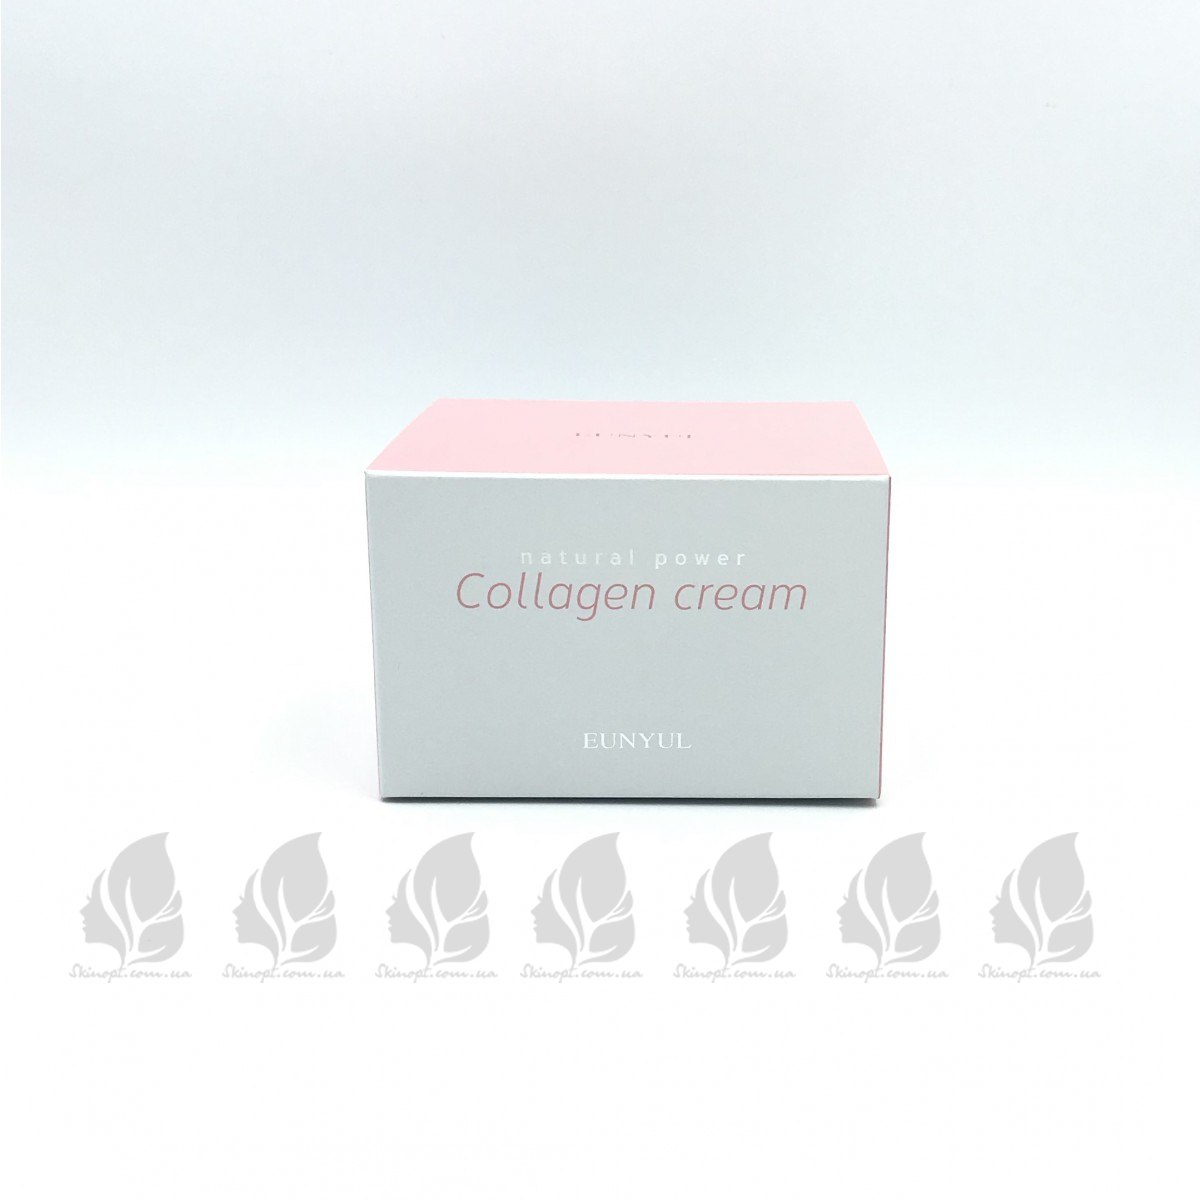 Крем для лица Eunyul Collagen. Natural Power косметика Eunyul. Eunyul Collagen сыворотка. Крем с коллагеном розовая упаковка.